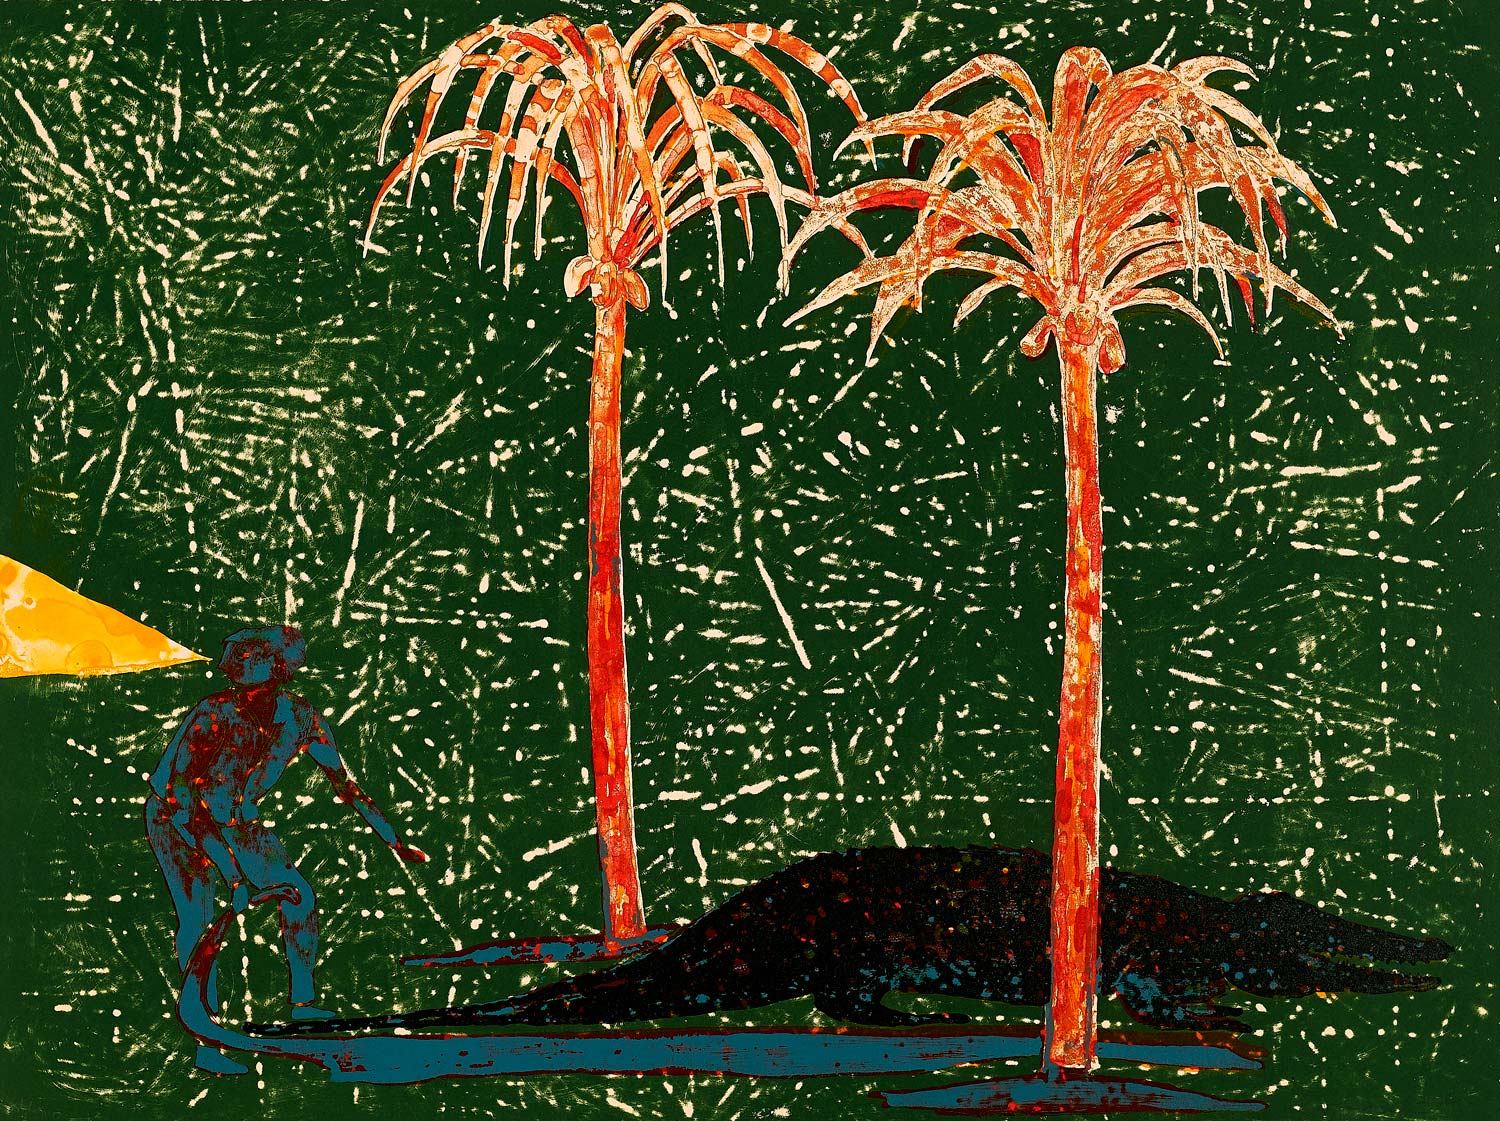 Stealing Shadows (Crocodile), 45 x 60 cm, 7-Colour Lithograph